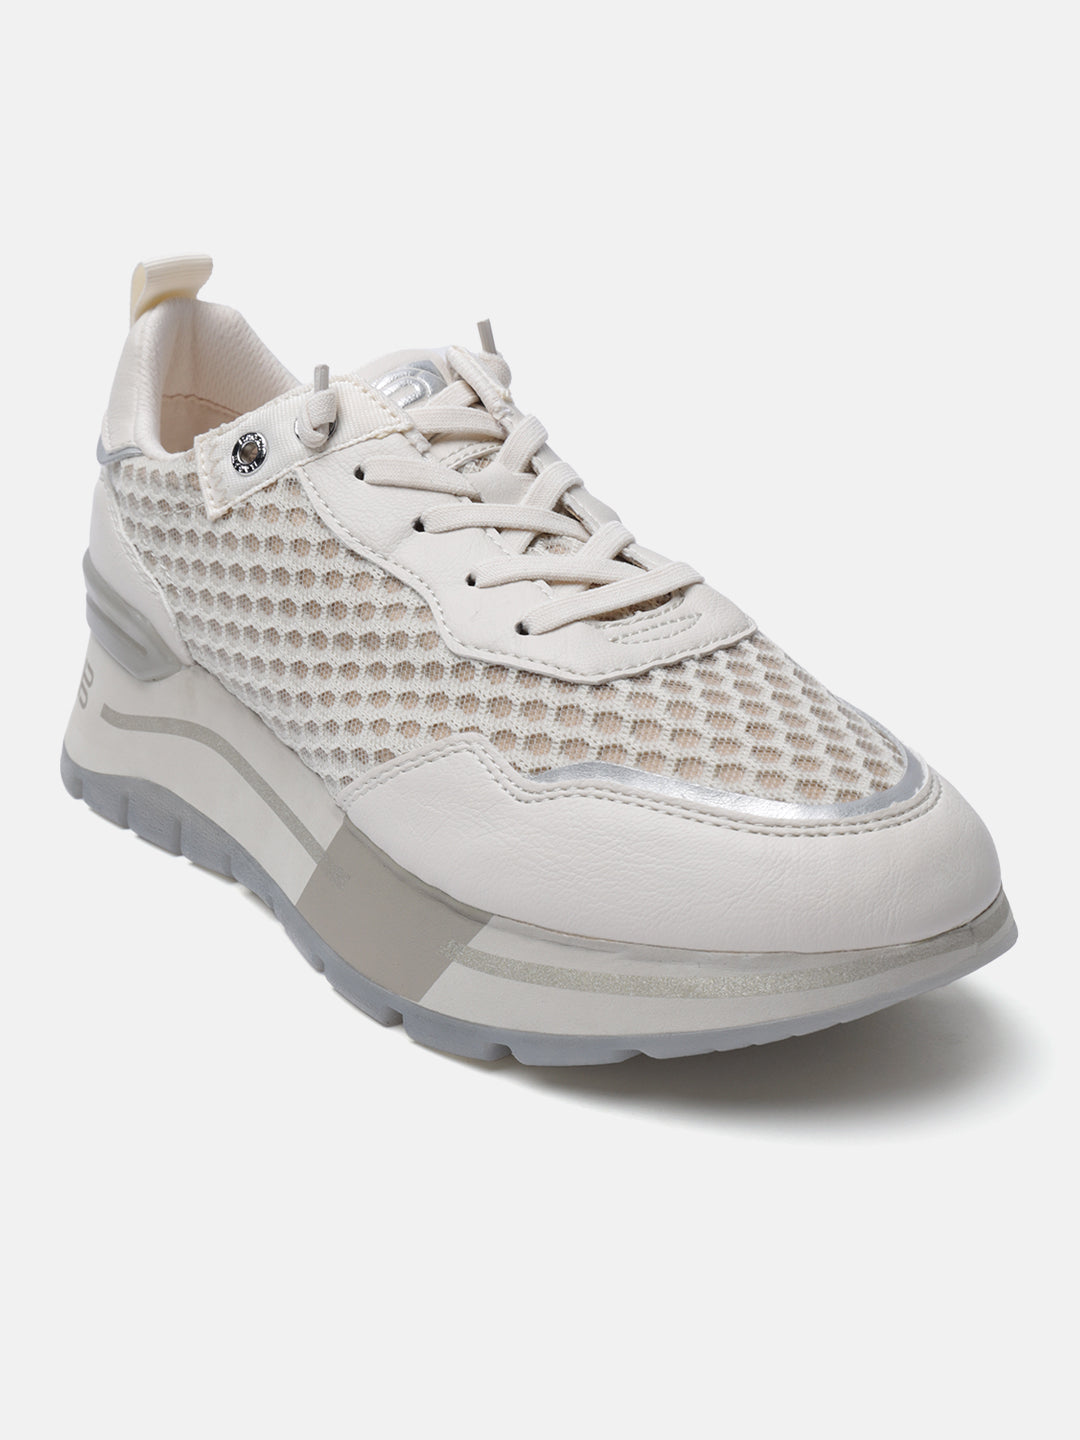 Callisti Beige & Silver Sneakers